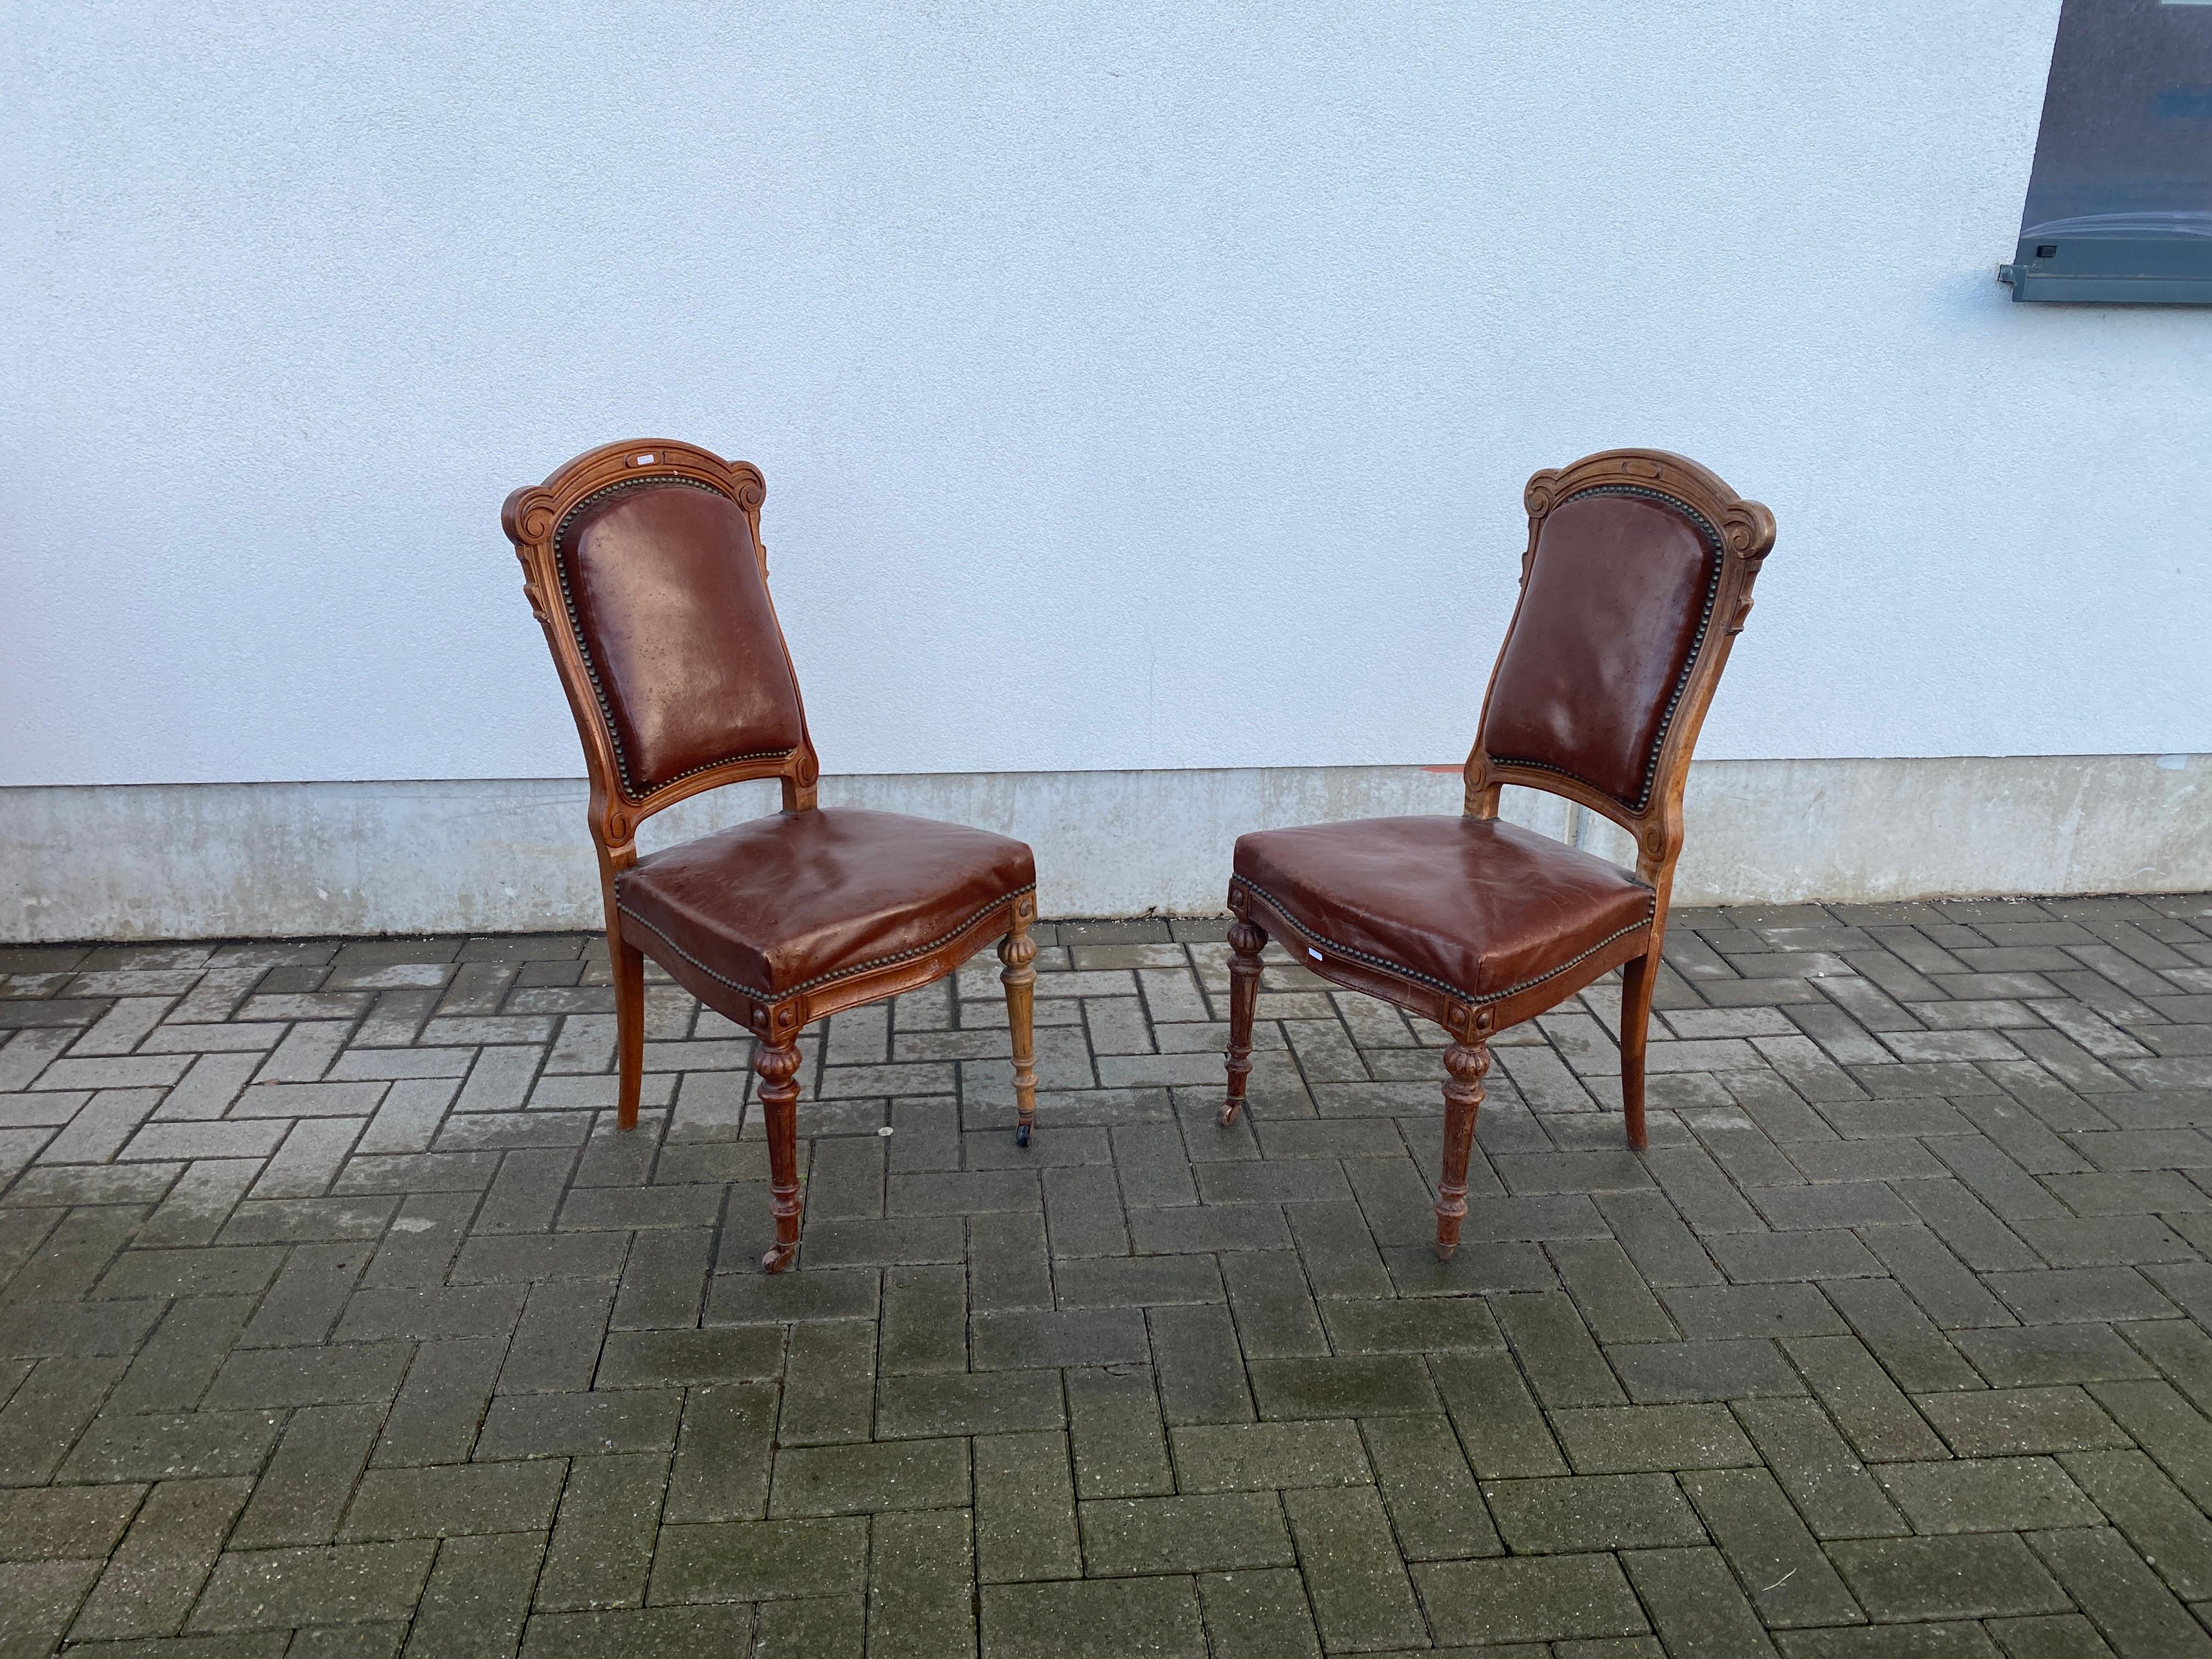 Seltene Garnitur von 12 Louis Philipe Stühlen aus Eiche und Leder, 19. Jahrhundert
Leder nicht original, aber immer noch in sehr gutem Zustand, kleine Defekte, aber kein Leder verdient es, geändert zu werden;
es kann notwendig sein, einige Sitze